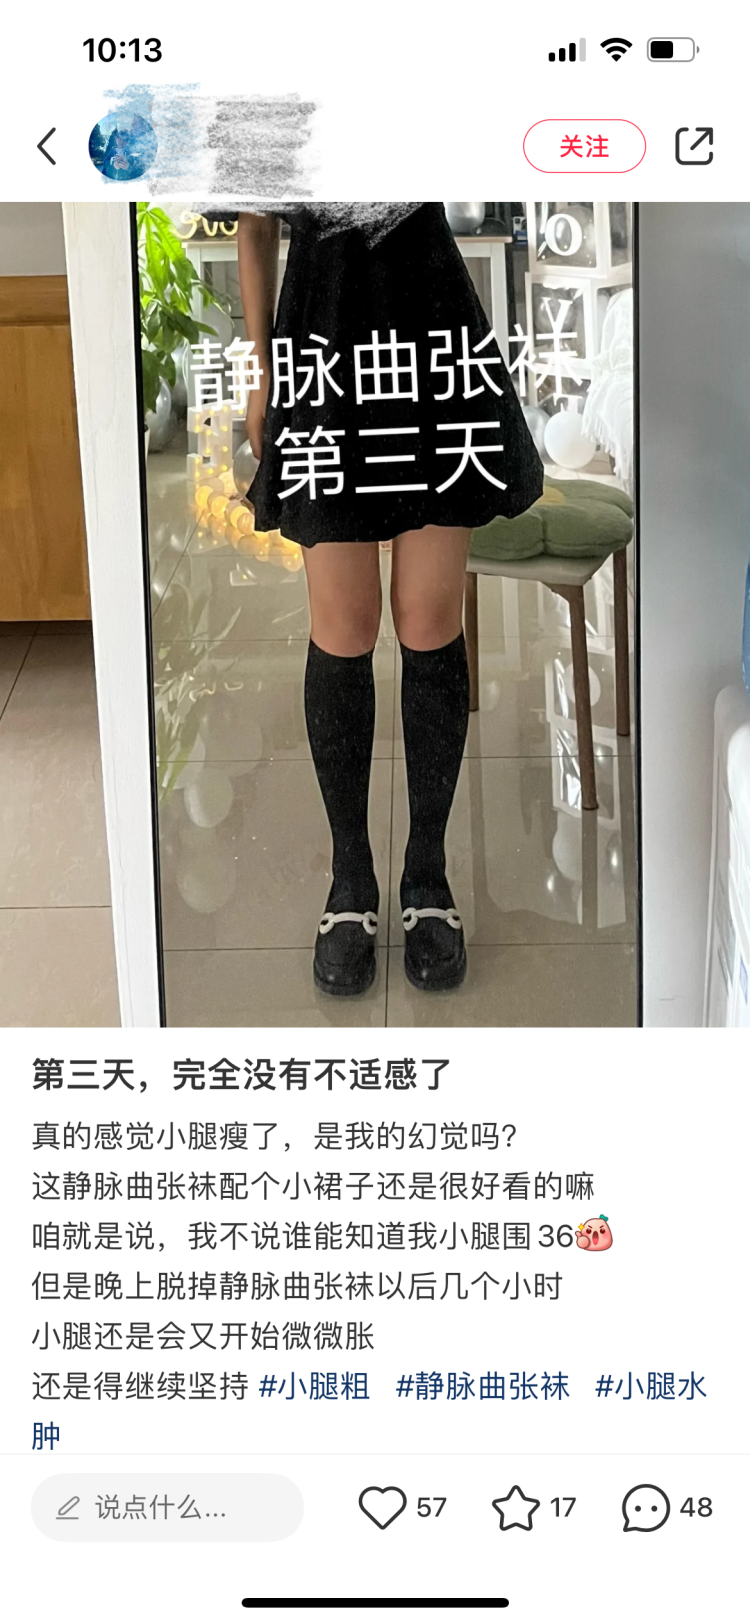 穿静脉曲张袜能”瘦腿”？ 重庆市药监局：没有燃脂功能，使用不当有副作用